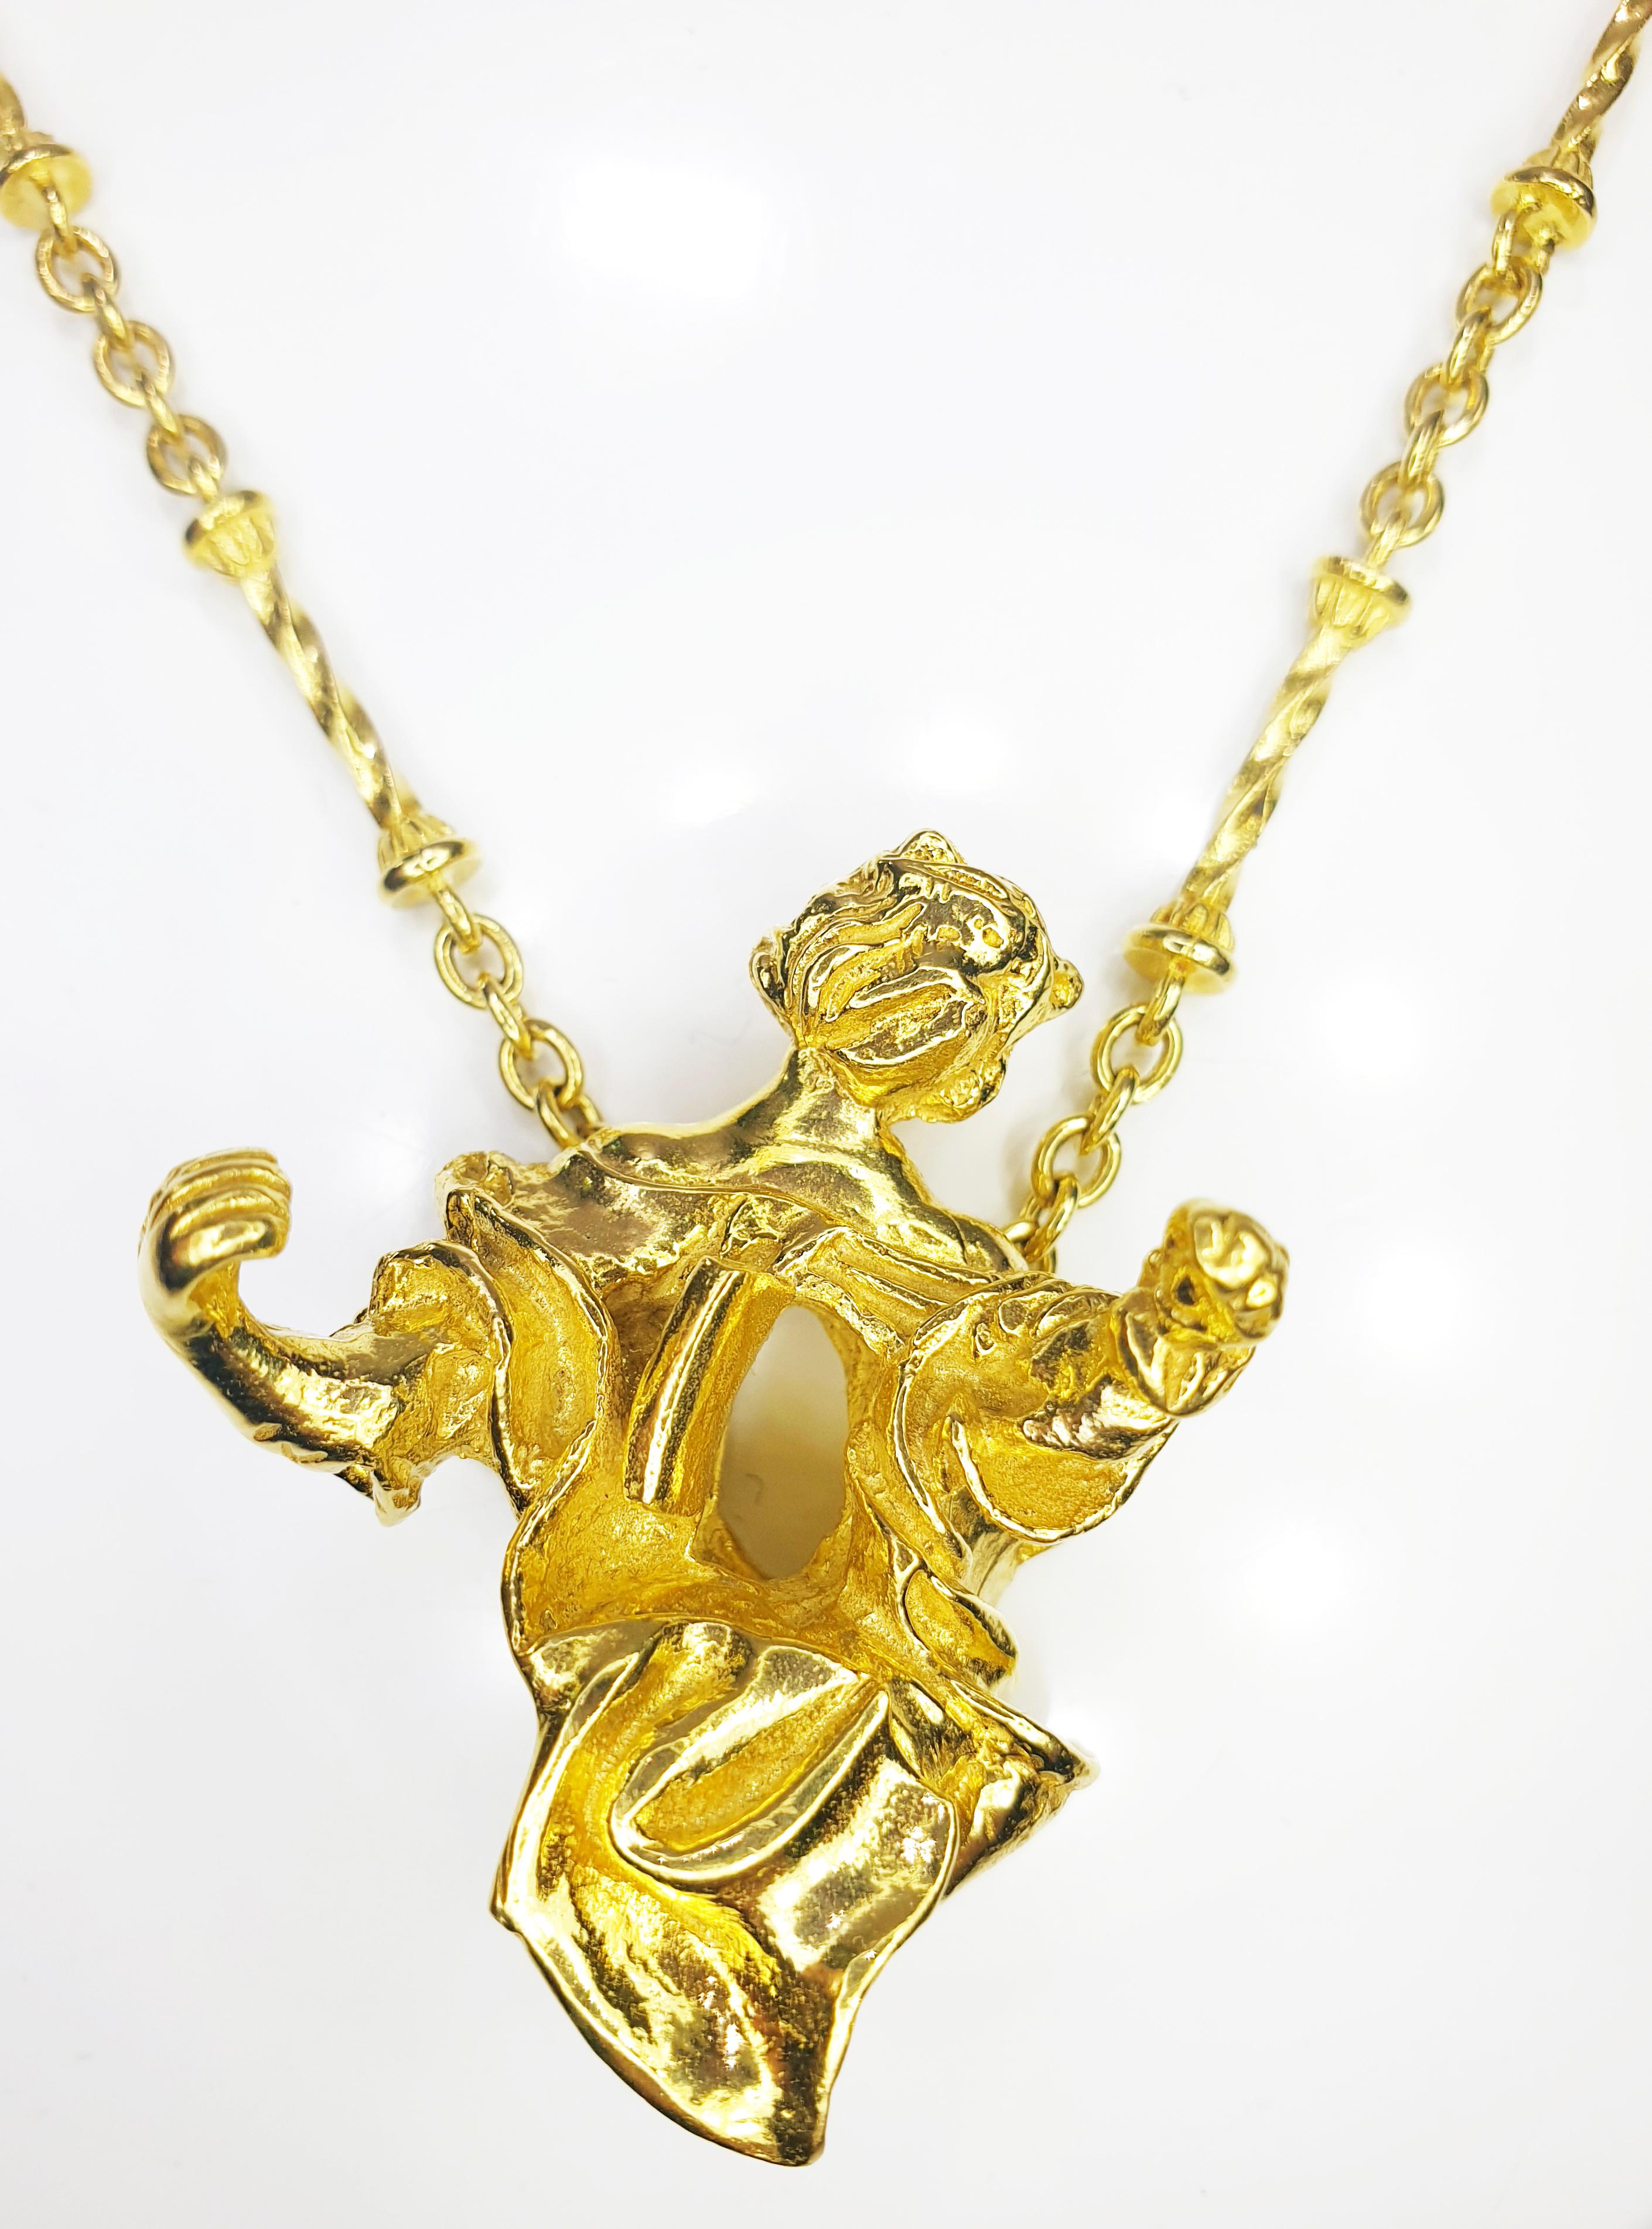 Collier / Bracelet unique en or jaune 18 carats Salvador Dali avec pendentif Madonna de Port Lligat 
Il s'agit d'une édition limitée numérotée des années 1970, numérotée 0040/ sur 1000.
Ce collier est accompagné d'une pochette et d'un cadre